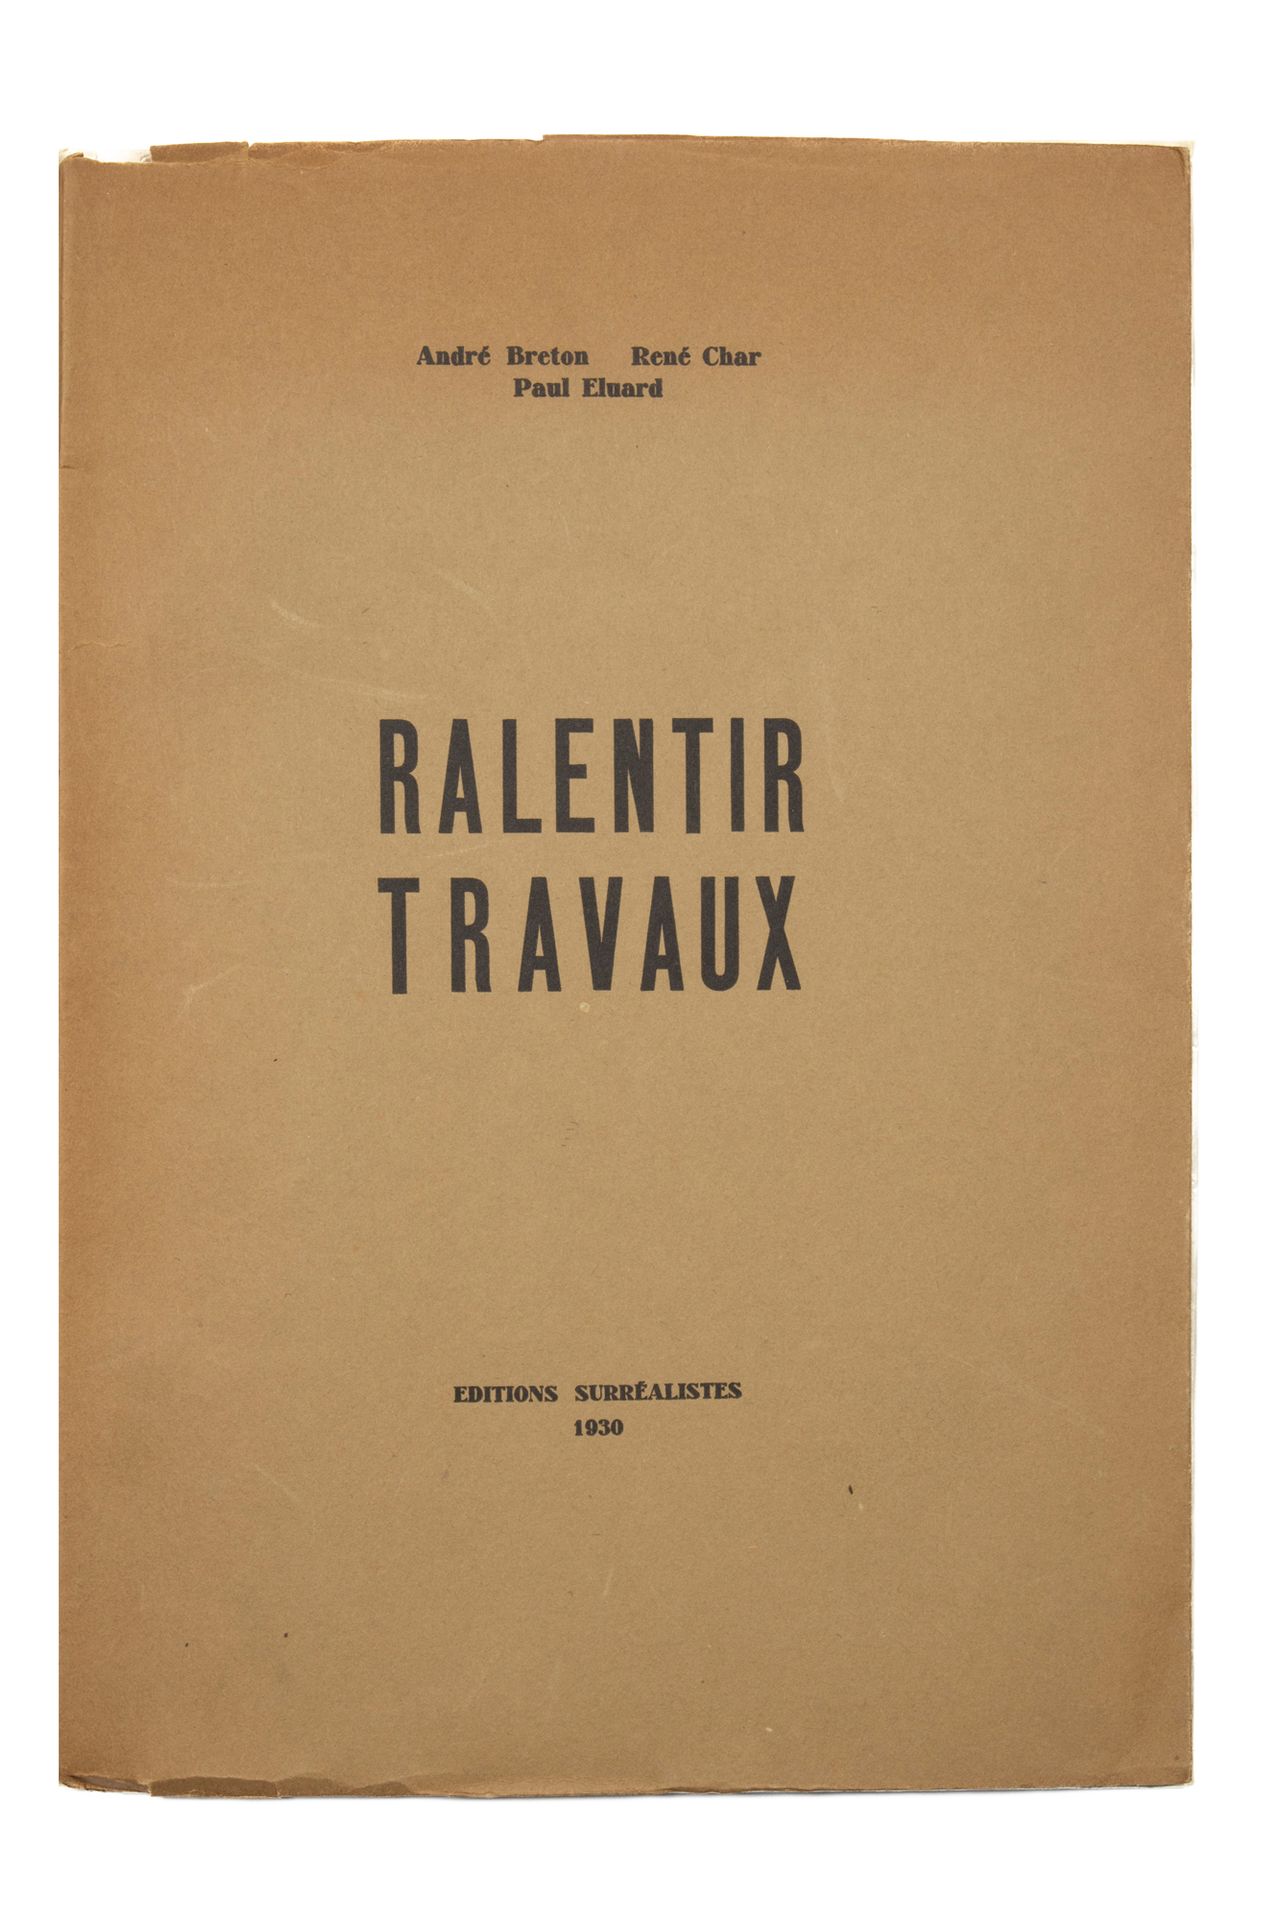 BRETON André - CHAR René - ELUARD Paul. Ralentir Travaux. Editions surréalistes,&hellip;